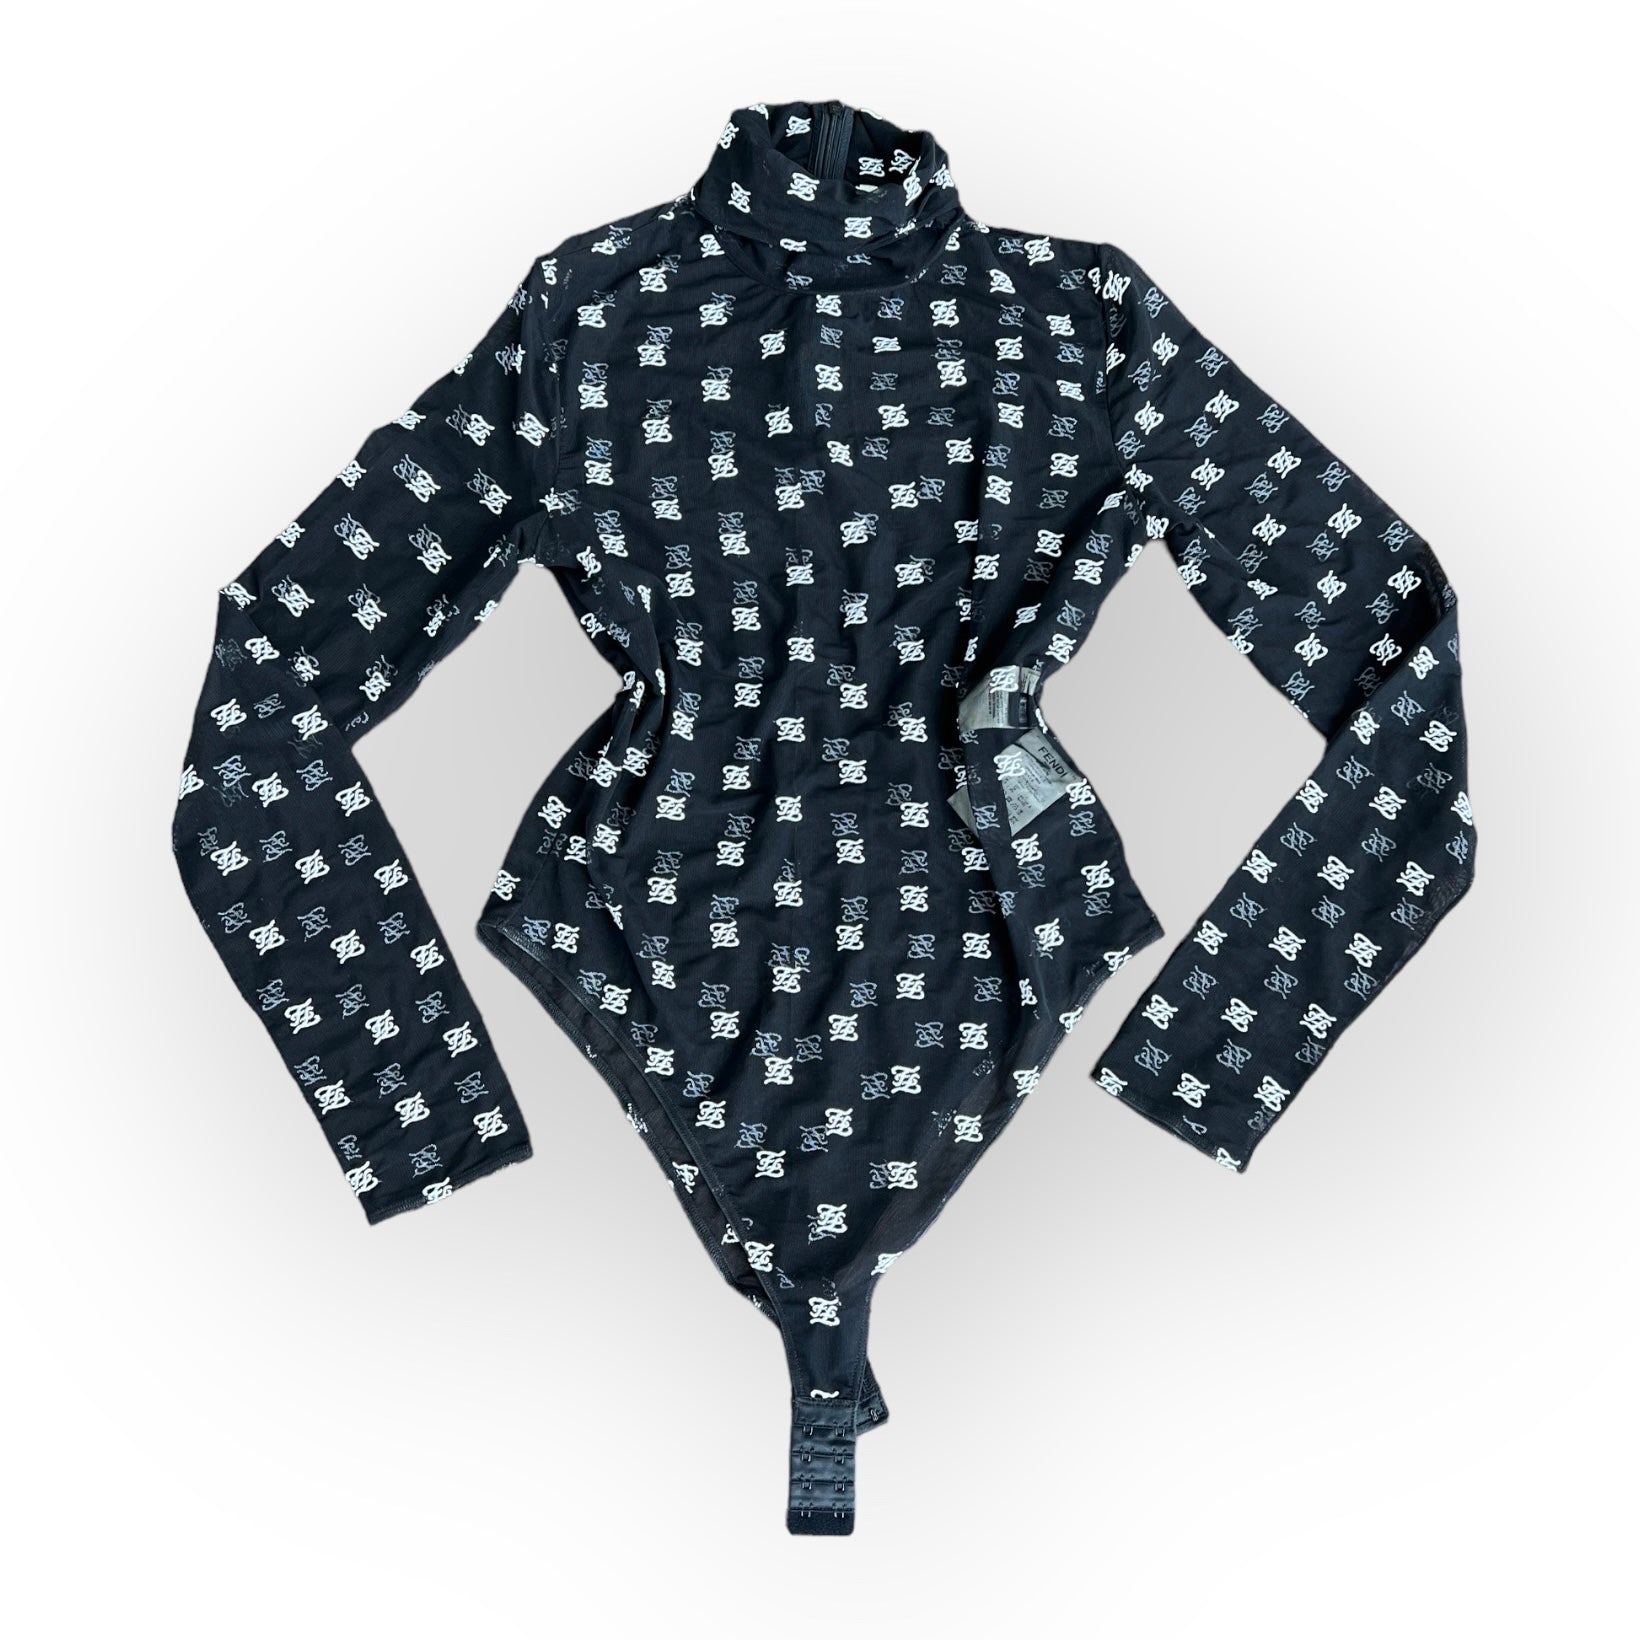 Fendi Micro Mesh Black Net Bodysuit W/ Bra L26905 Woman's Size L